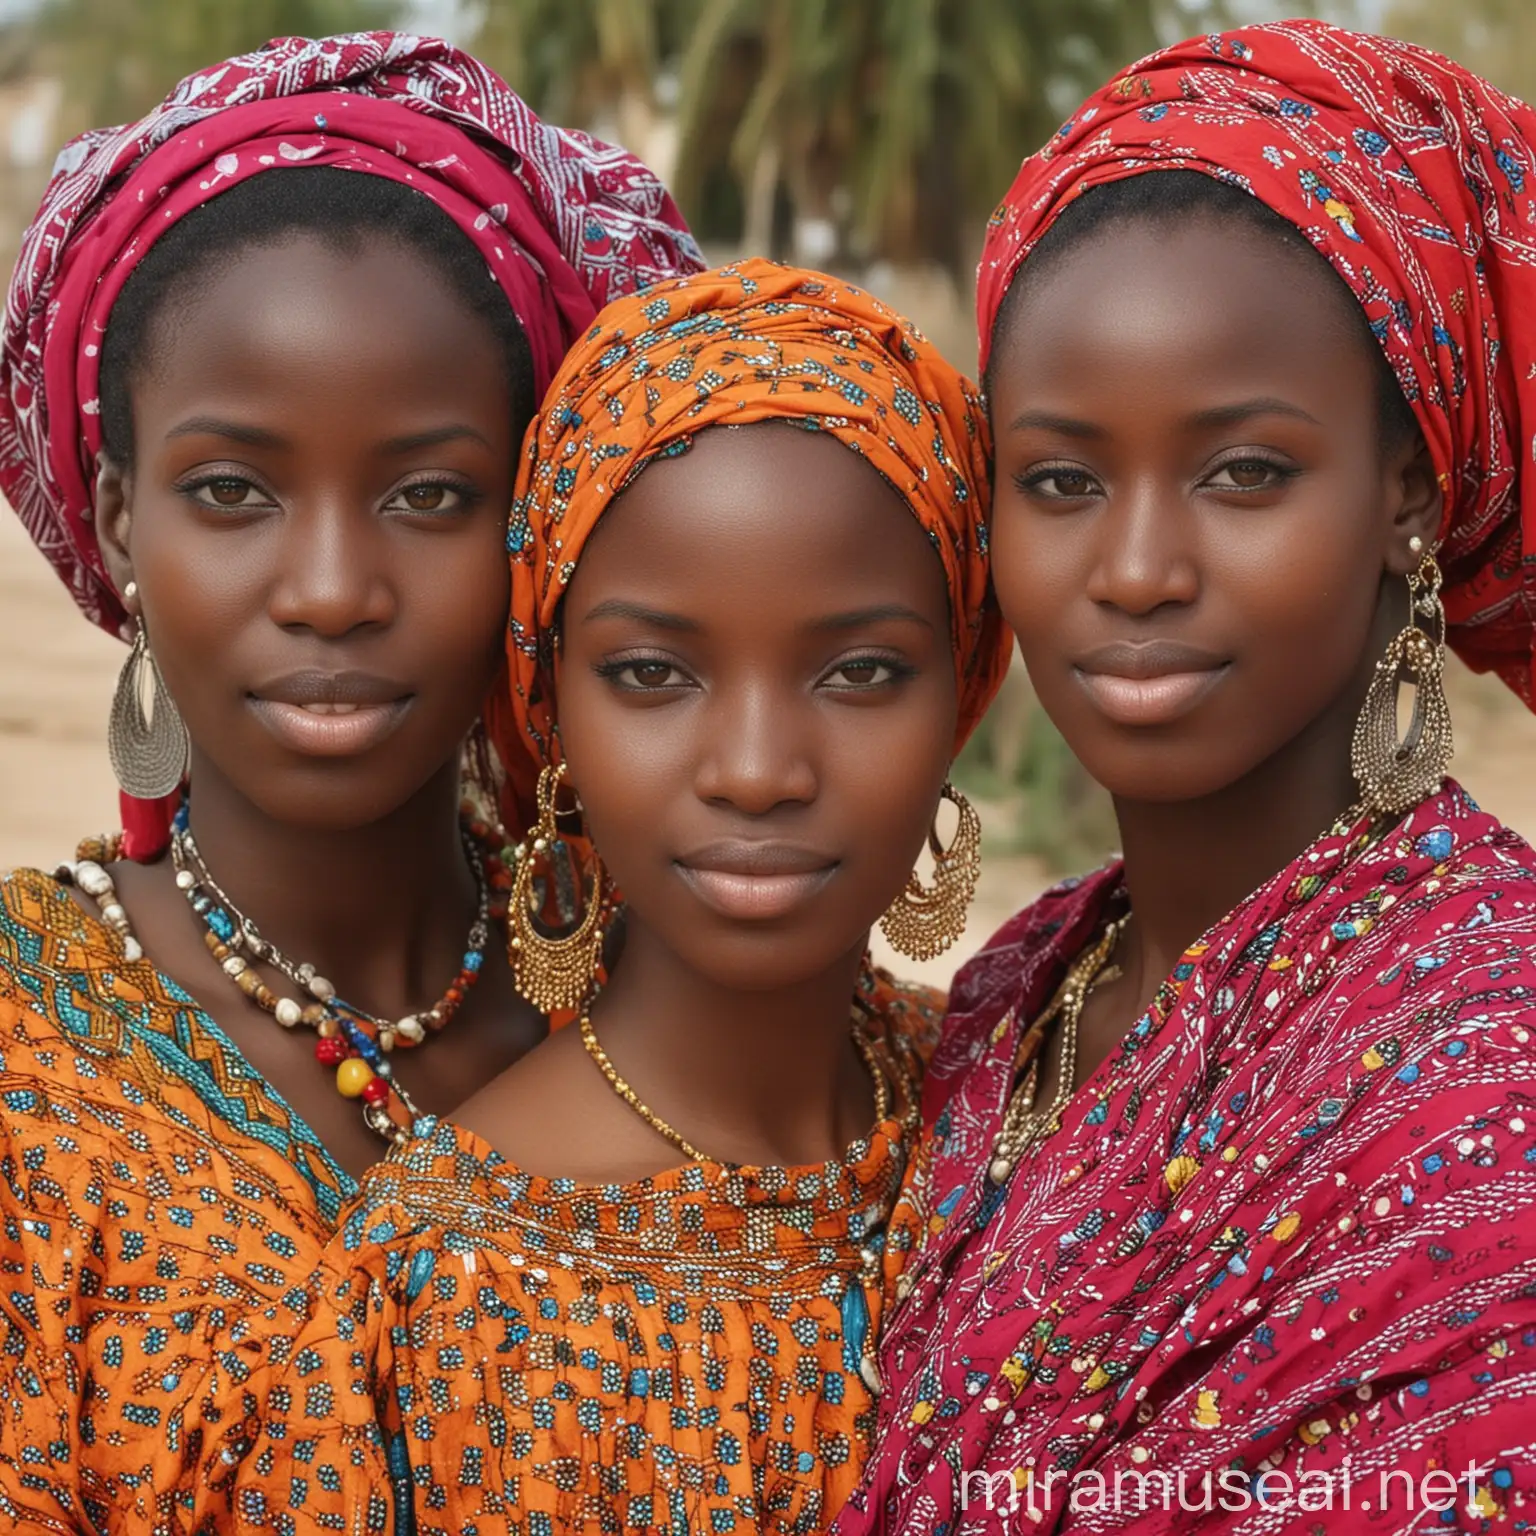 Vibrant Senegalese Women in Traditional Attire Celebrating Culture